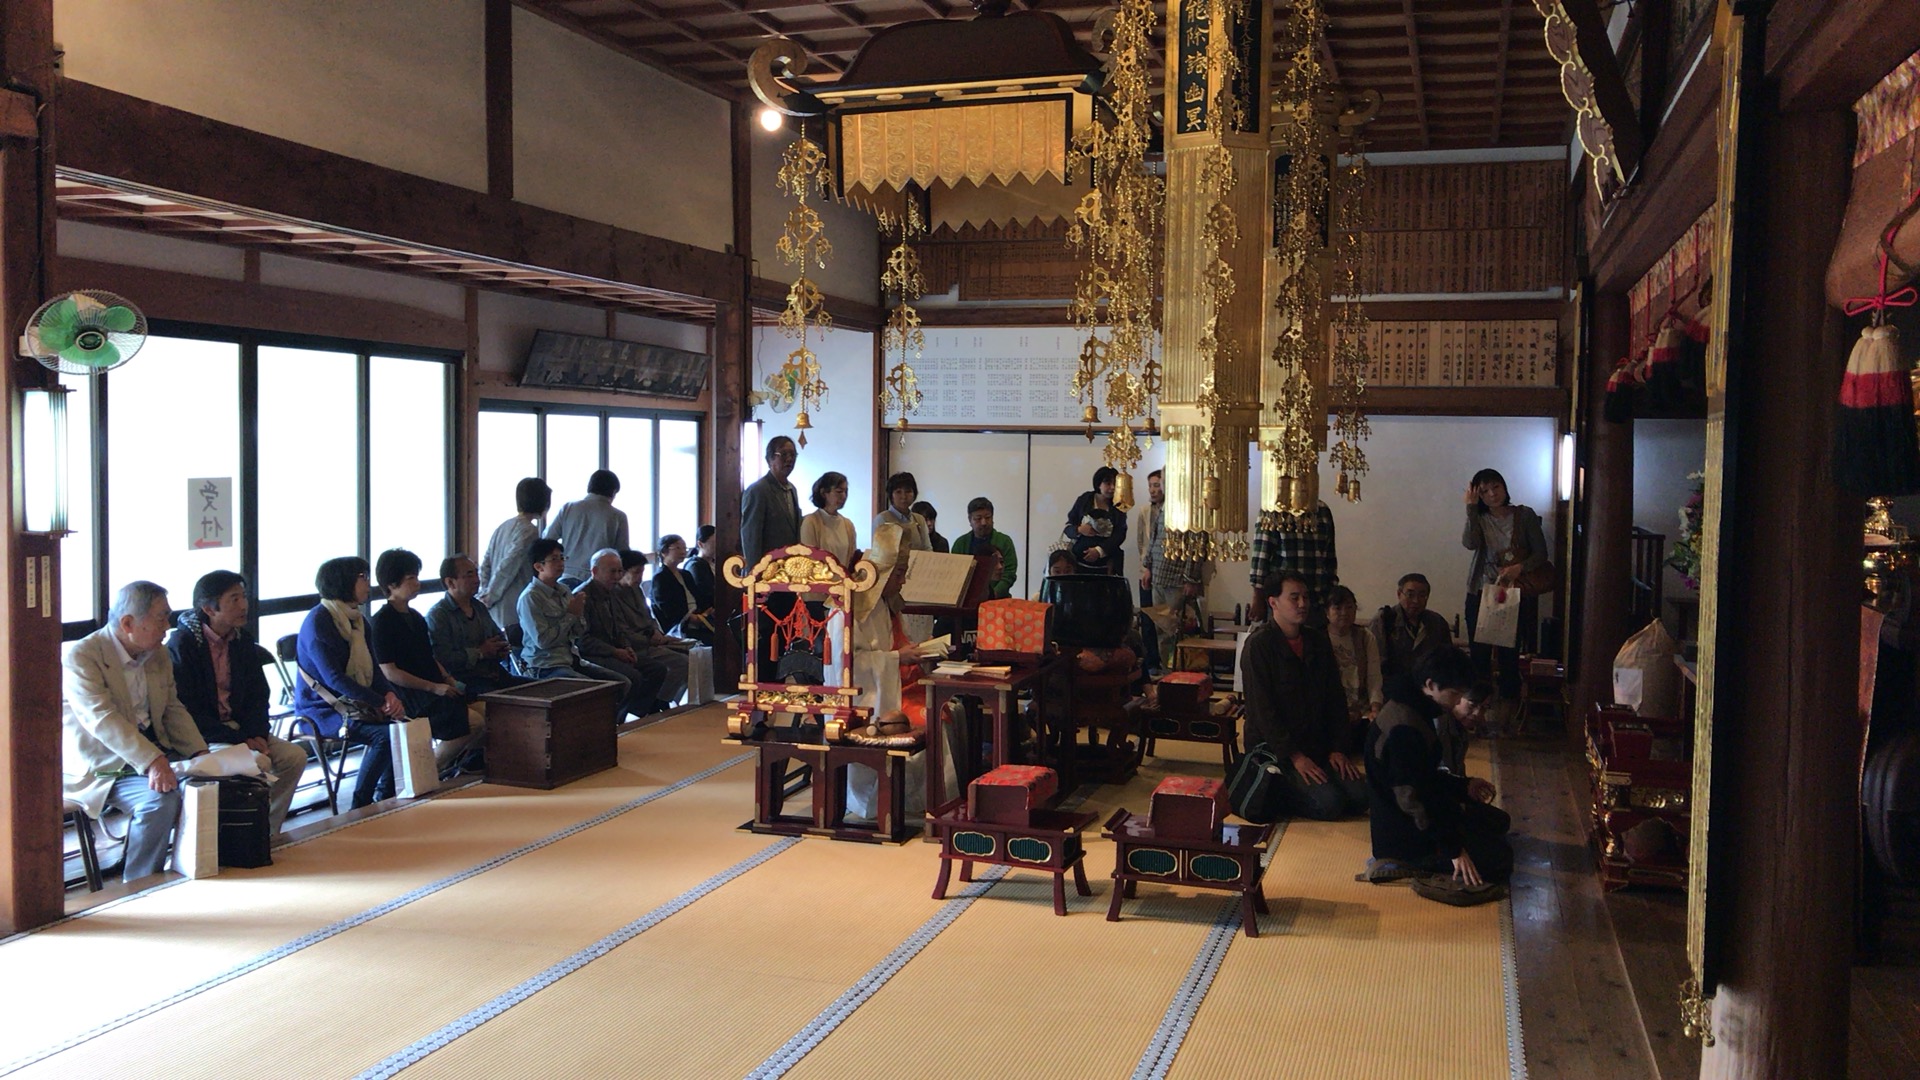 10月23日 右京区 鳴滝 三宝寺法要祭 無事に終わりました。 ペットの葬儀／火葬なら関西動物霊園